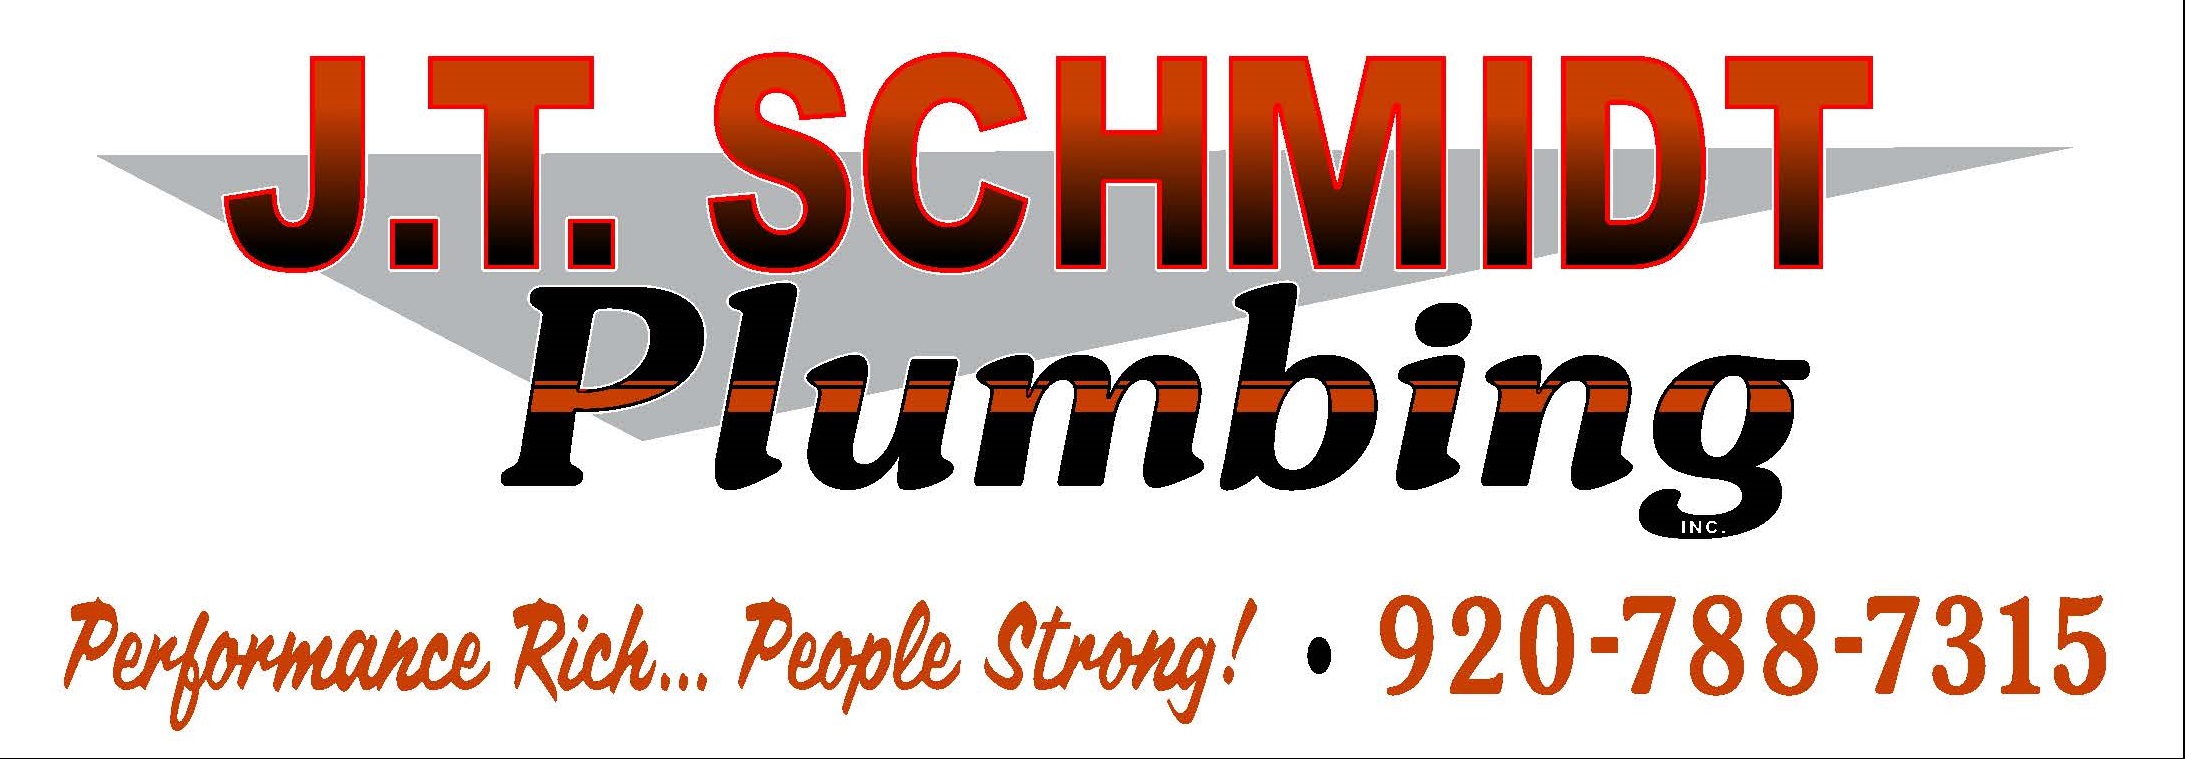 JT Schmidt Plumbing vector logo